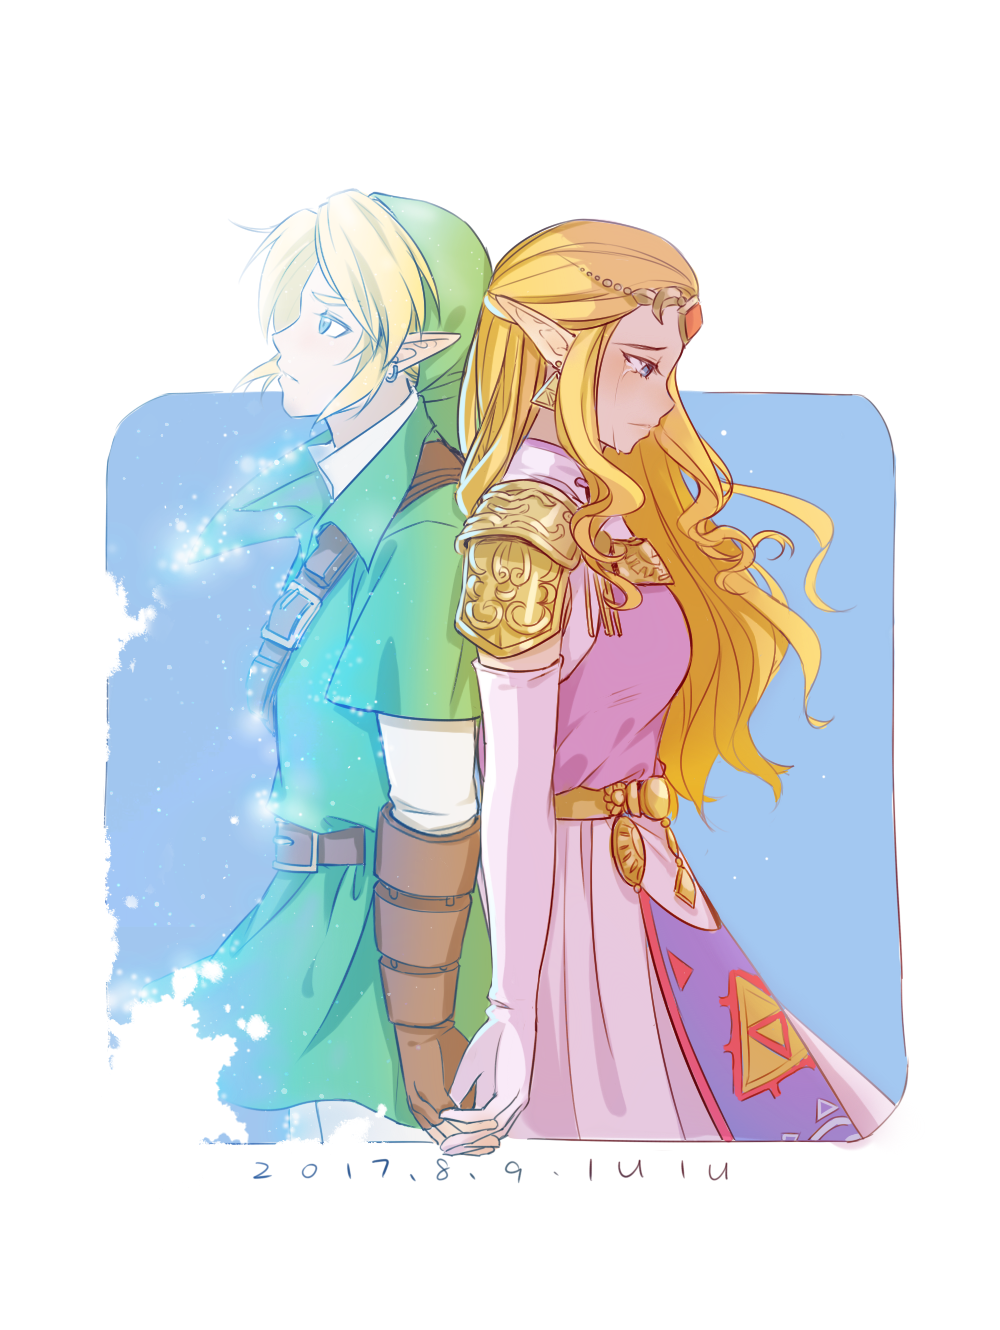 Ocarina of Time - Princess Zelda by deryer on DeviantArt